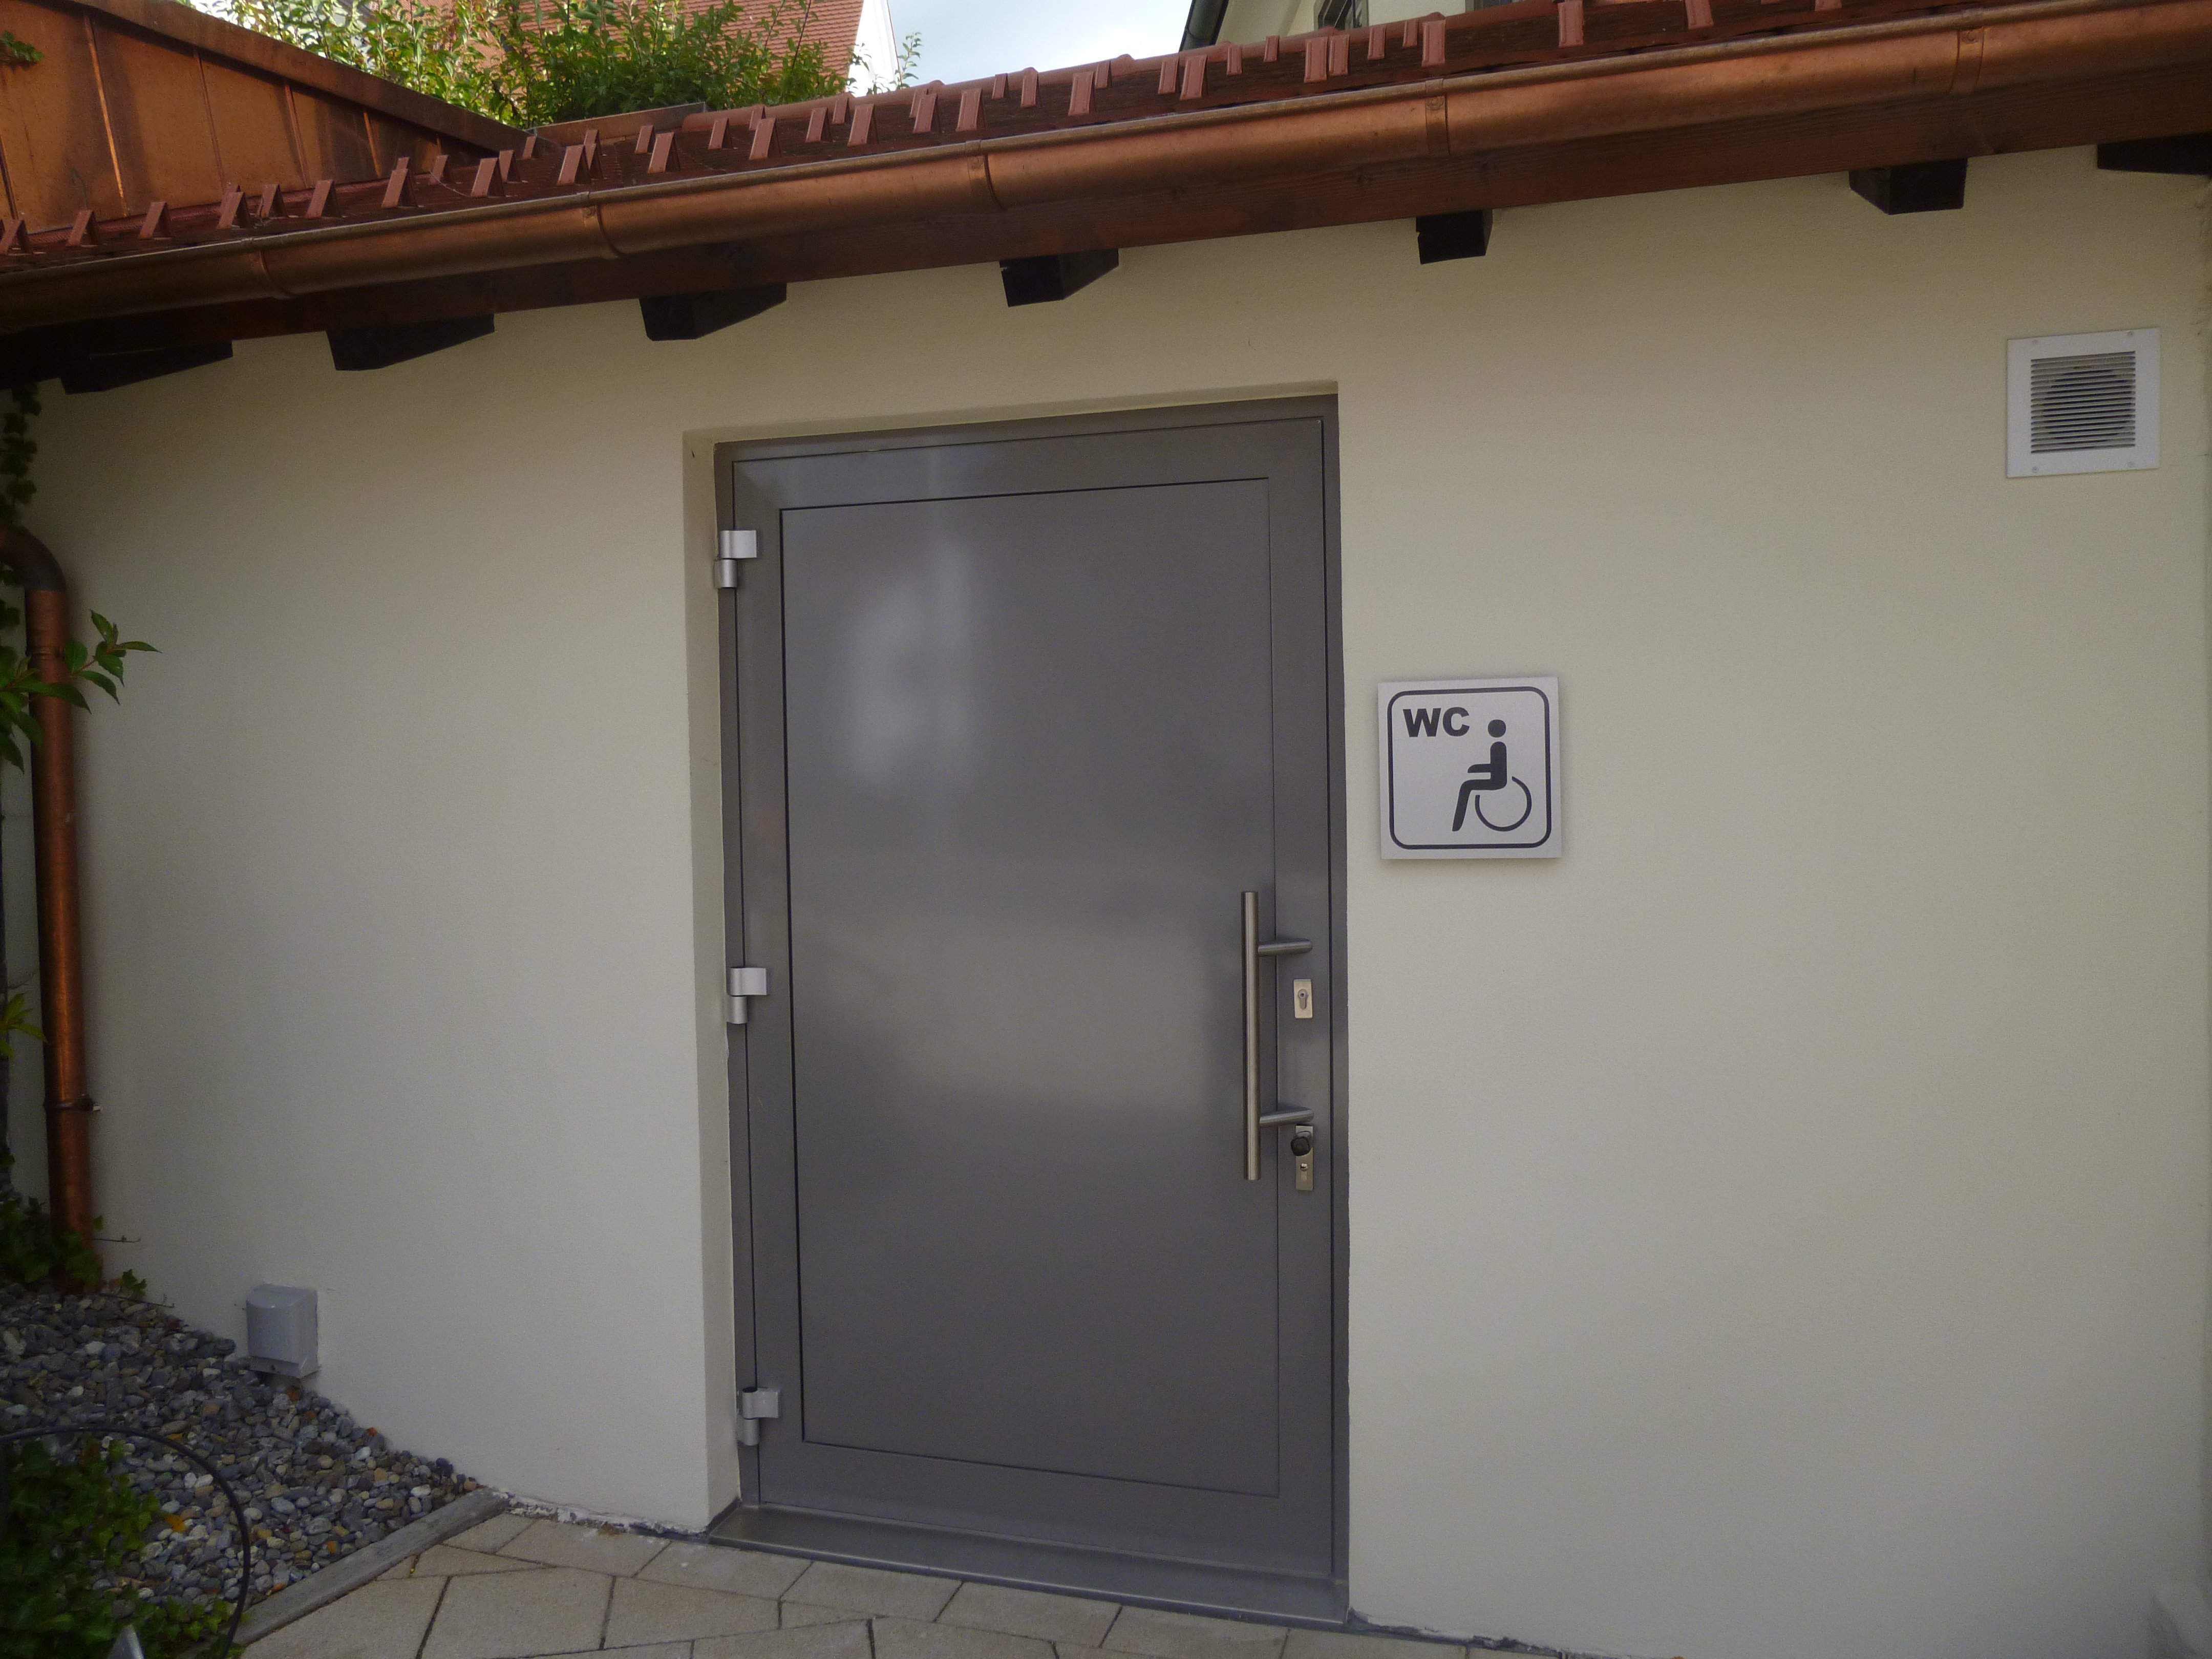  Eingang öffentliche Toilette am Rathaus Bergatreute - das Bild wird mit Klick vergrößert 